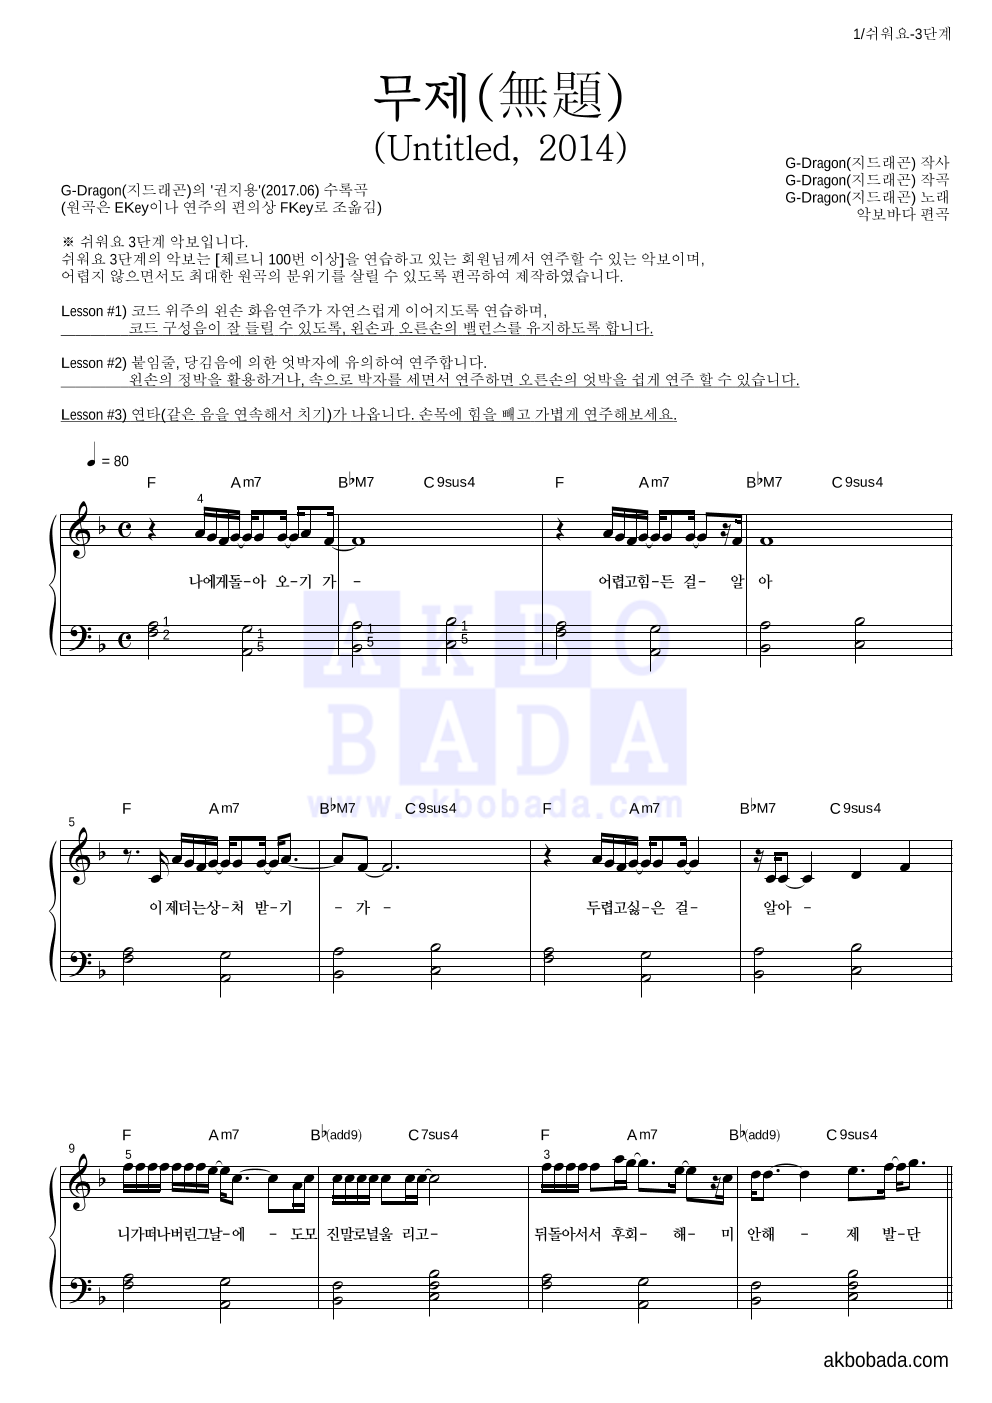 지드래곤 - 무제(無題) (Untitled, 2014) 피아노2단-쉬워요 악보 